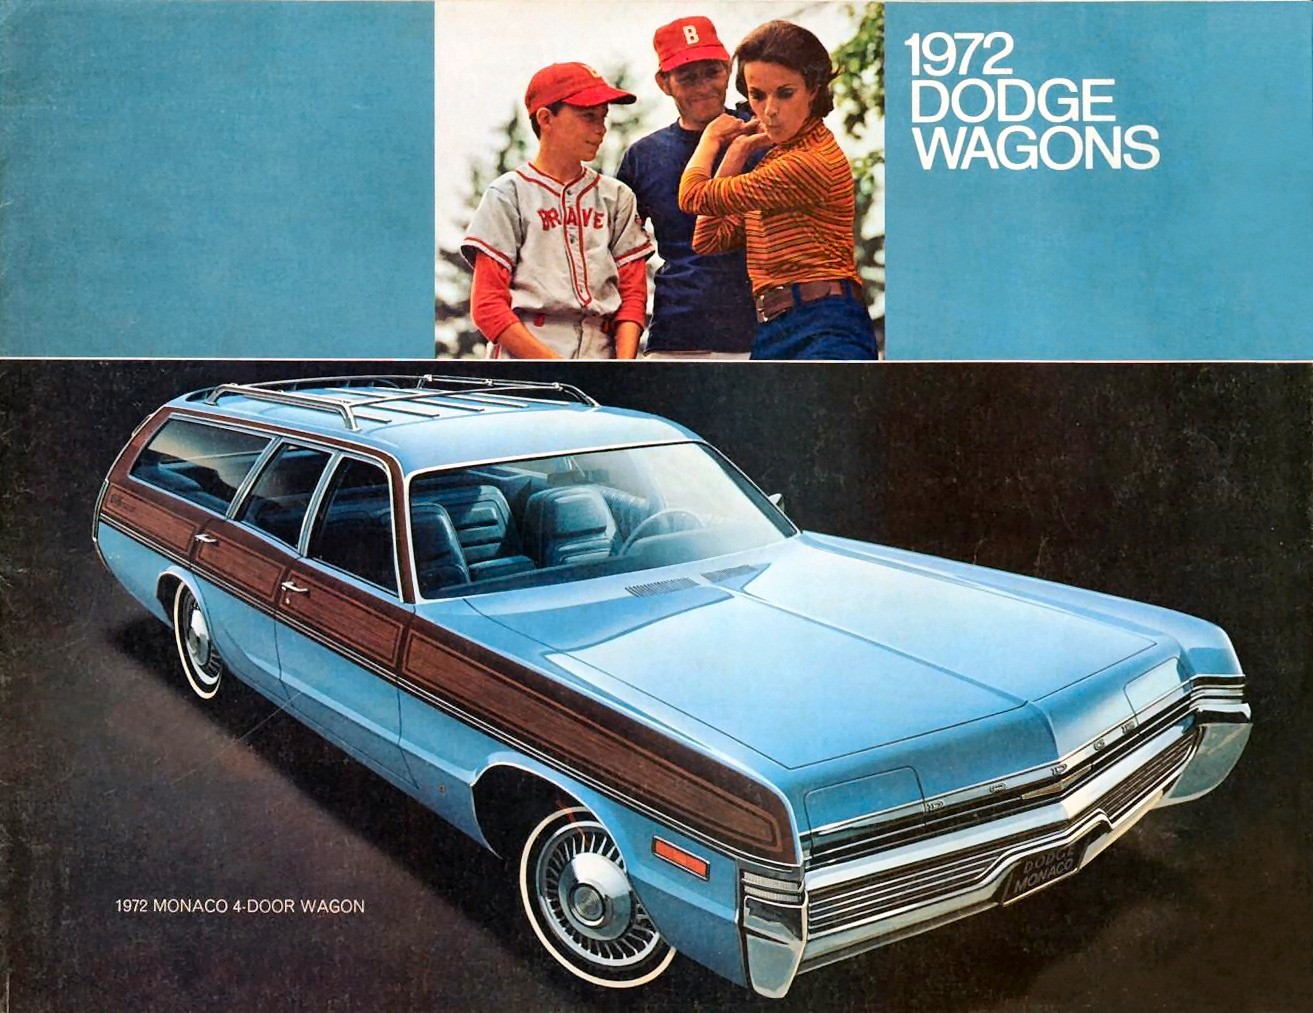 n_1972 Dodge Wagons-01.jpg